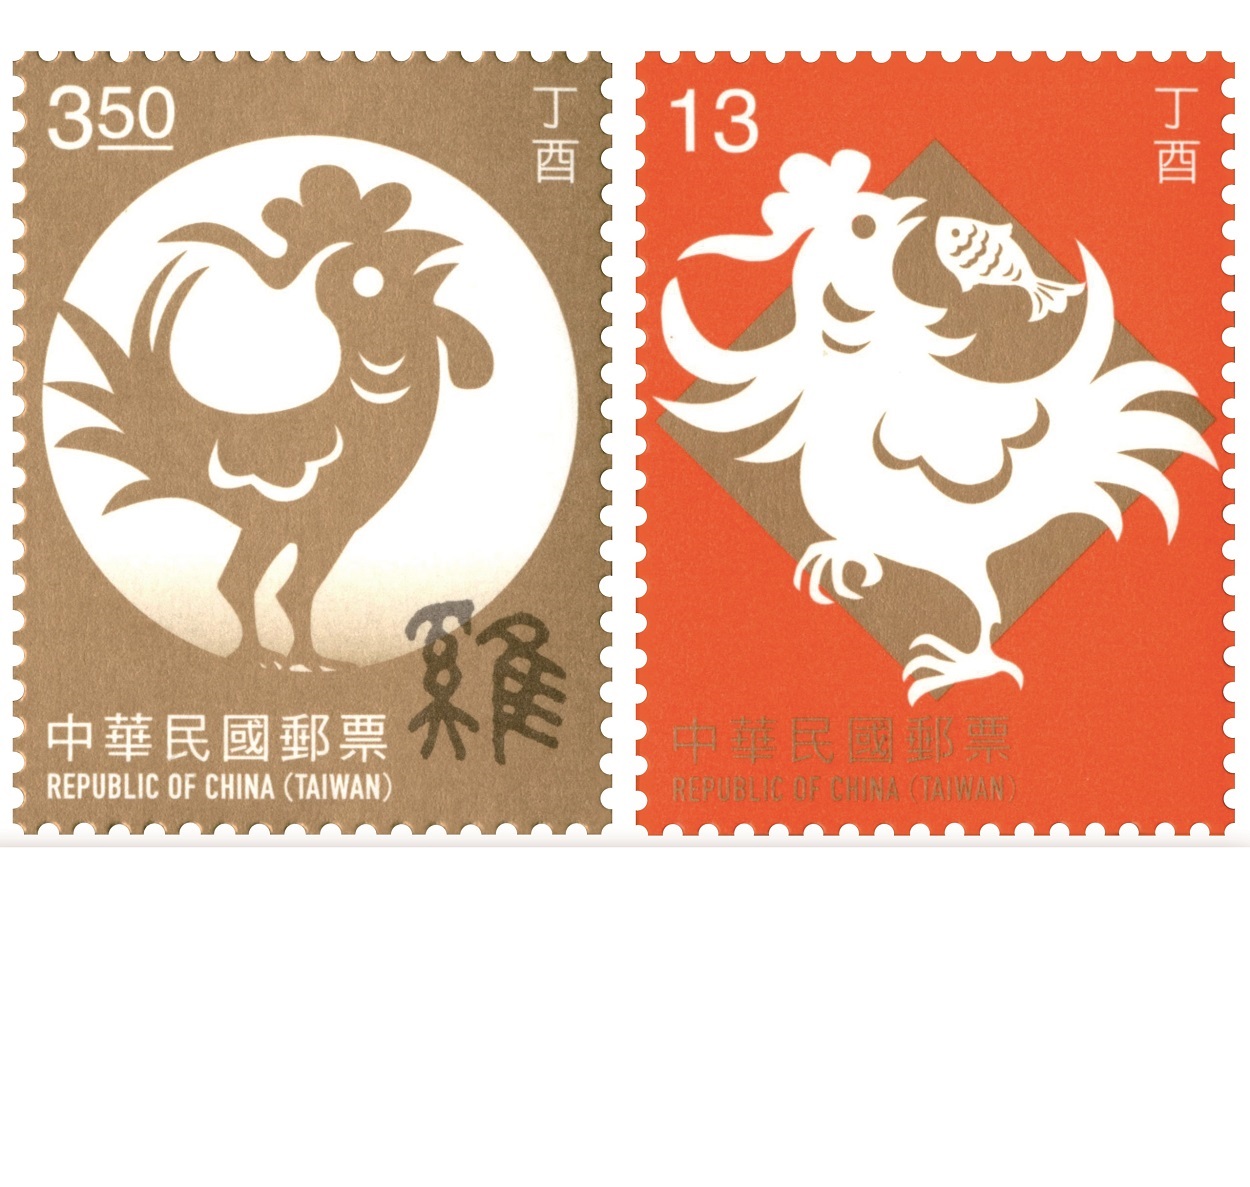 商品名稱_新年郵票(105年版)